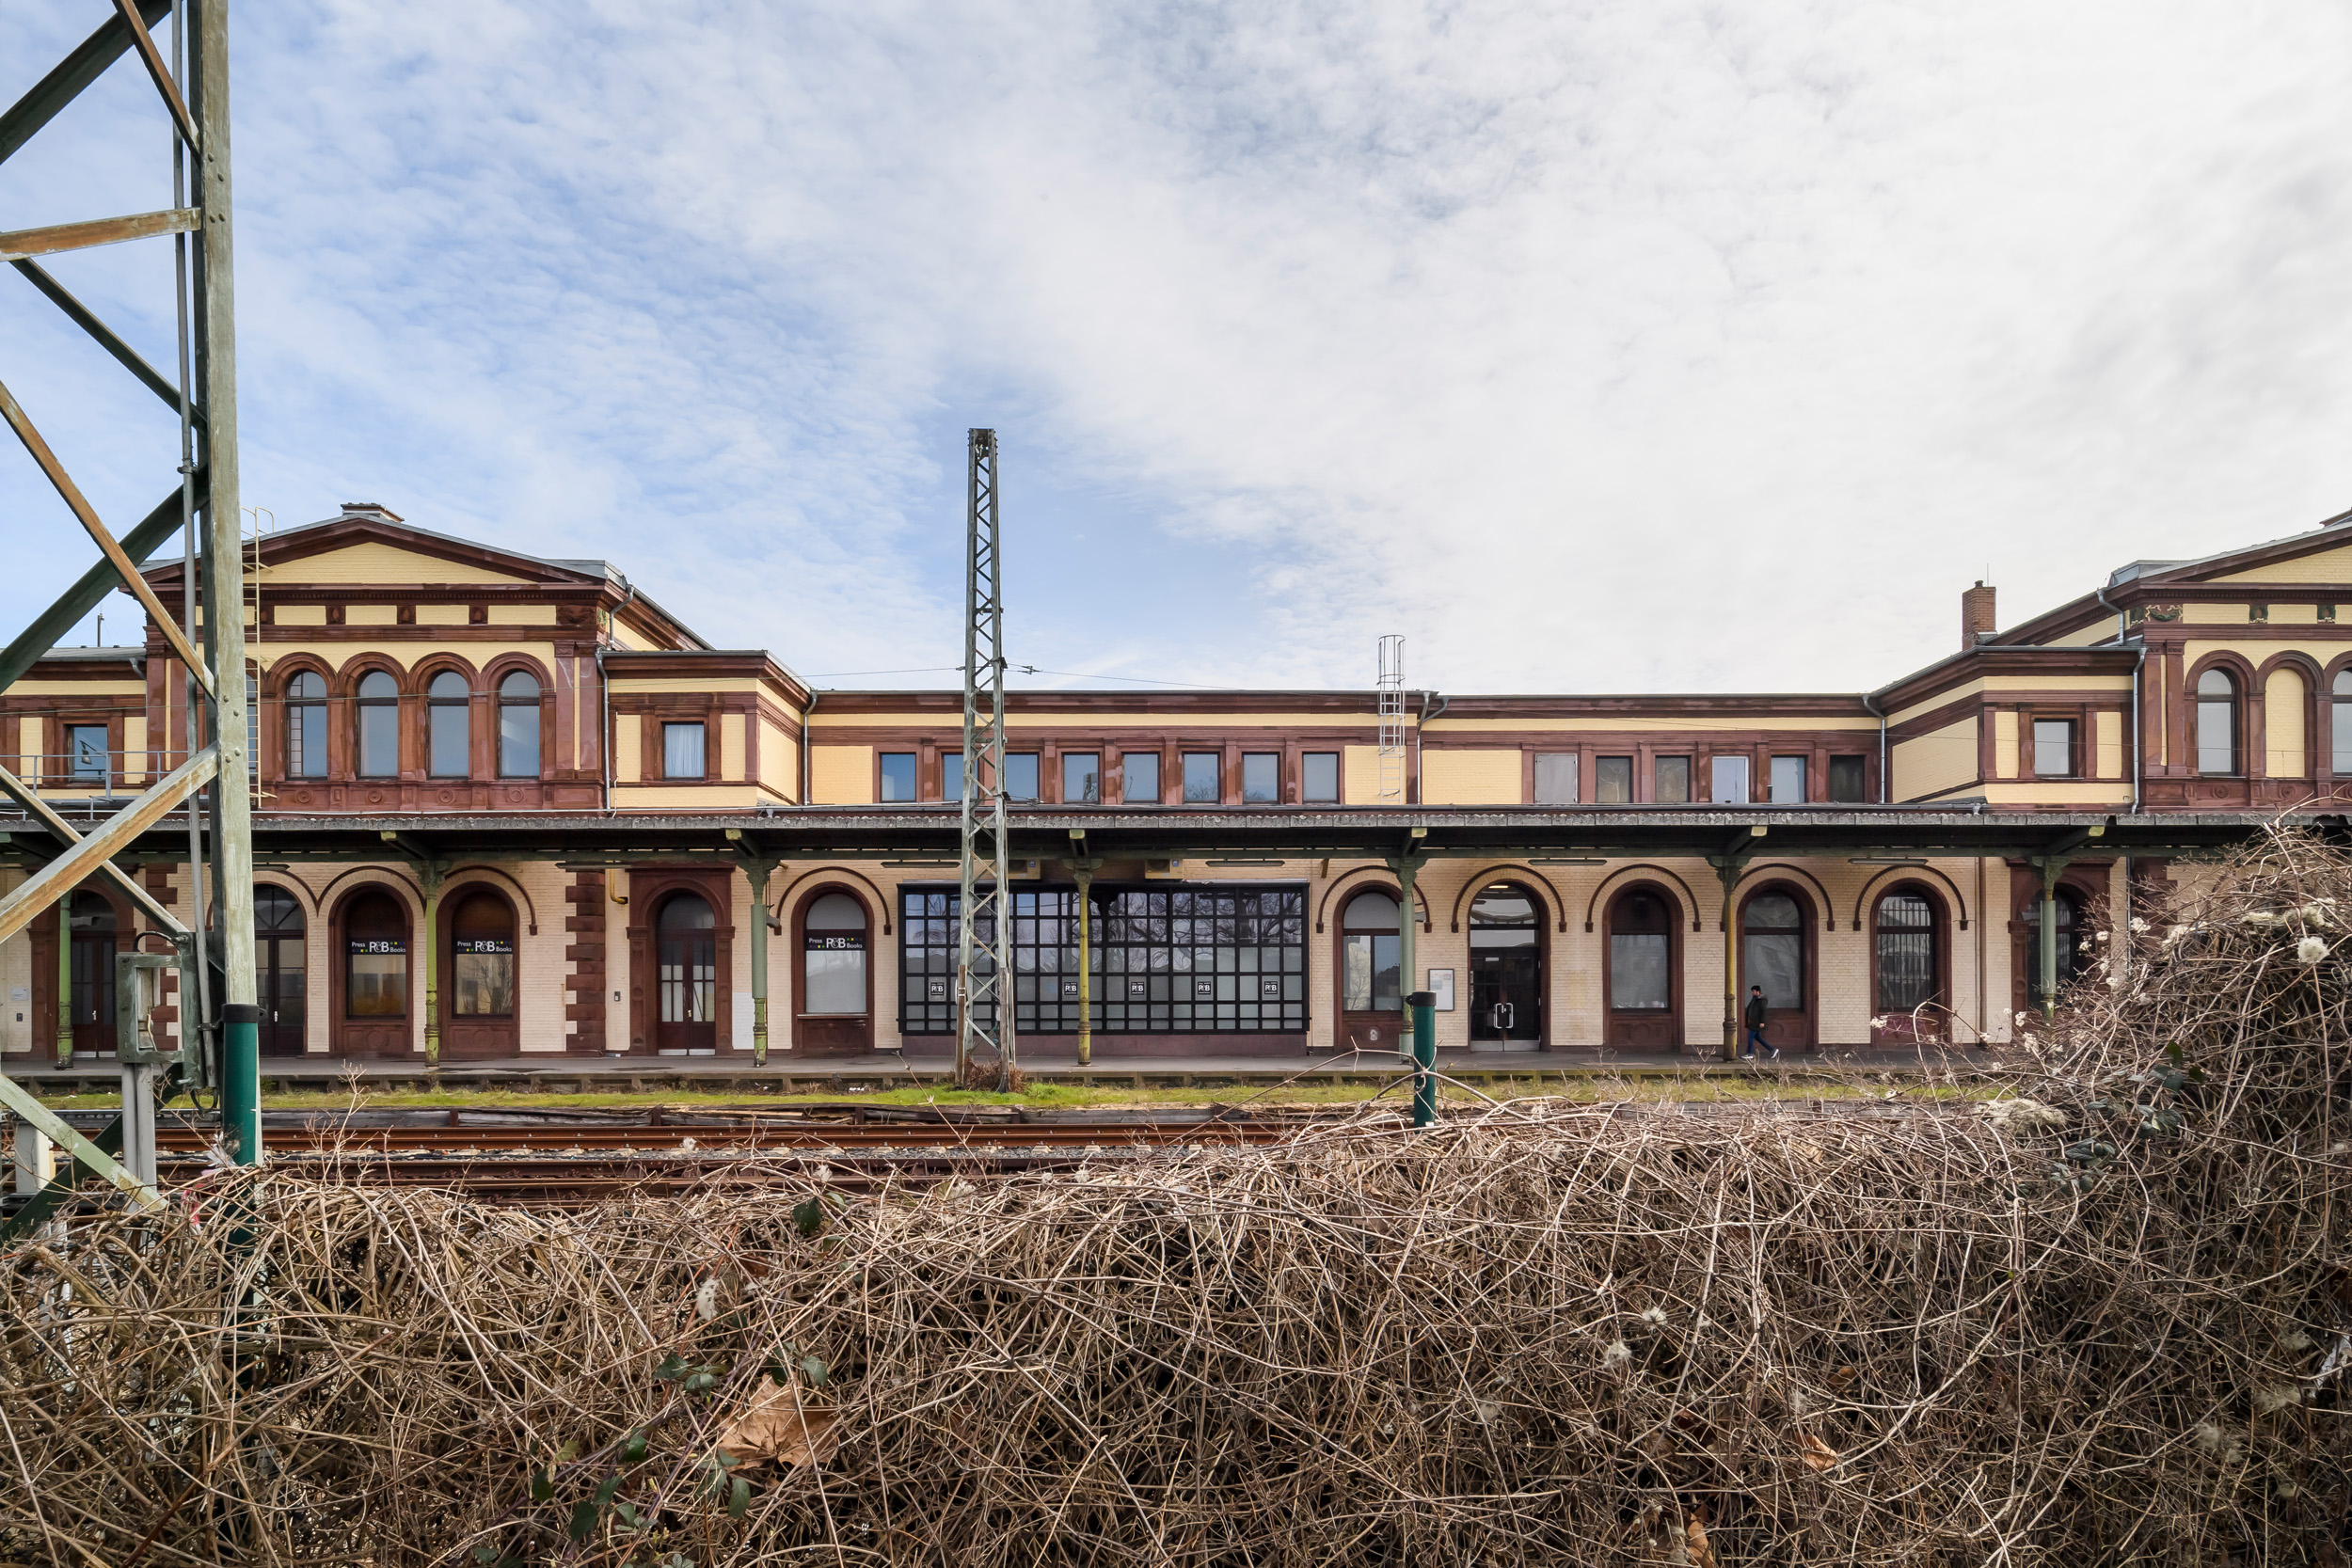 Schöner ankommen in NRW: Bahnhof Düren - Blick auf Gebäude über Gleise